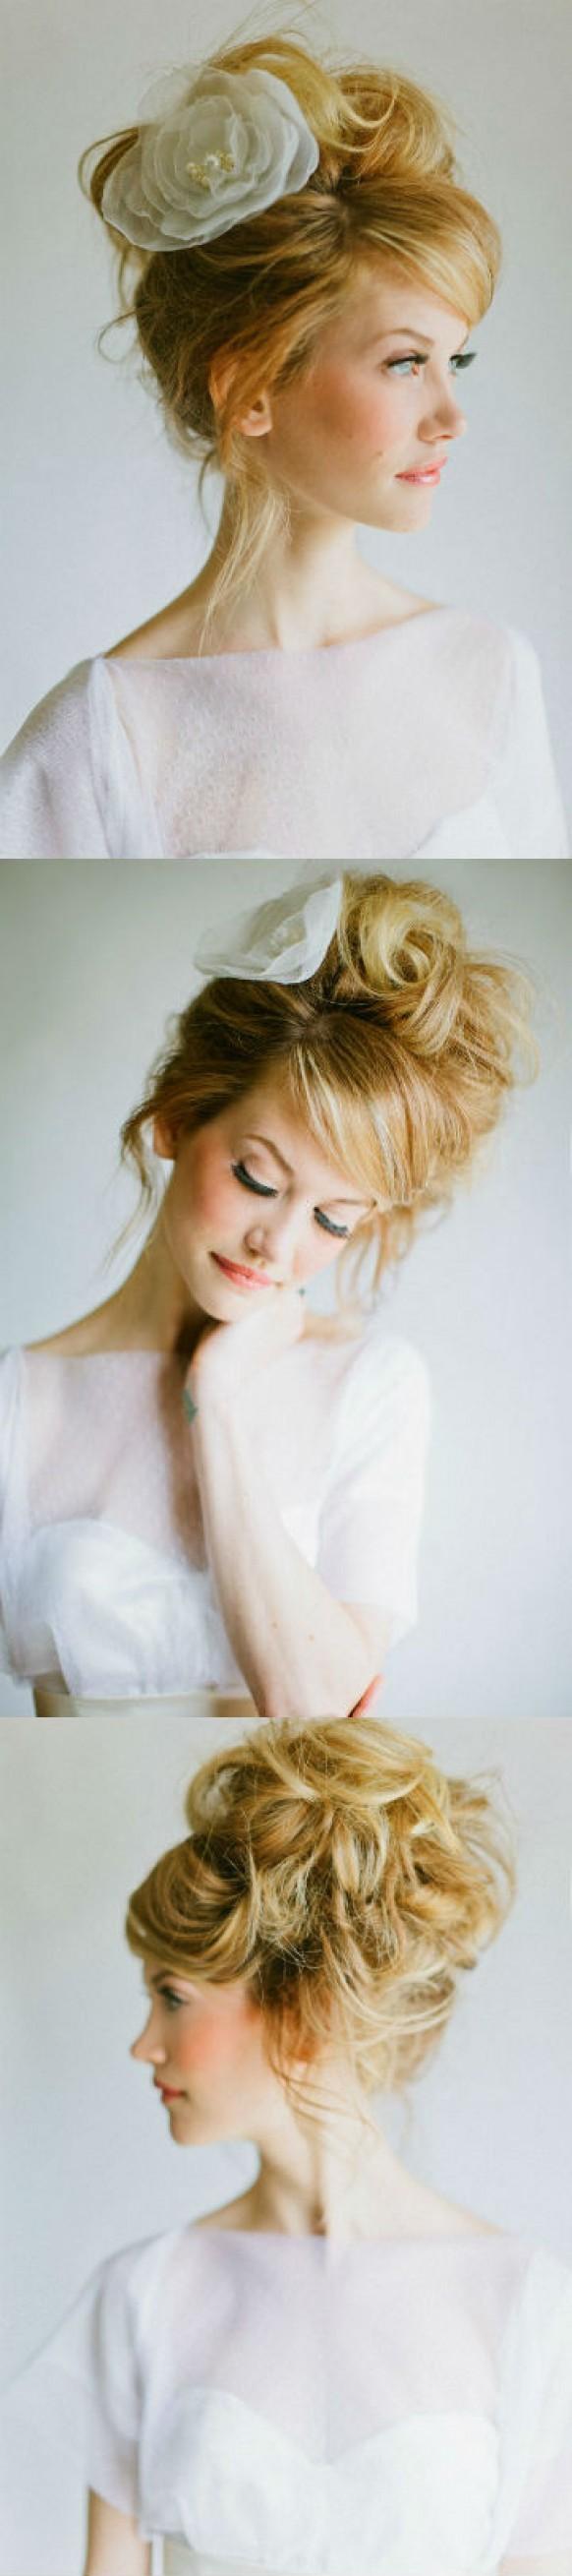 wedding photo - Романтический стиль волос невесты с большой розой accesorizes